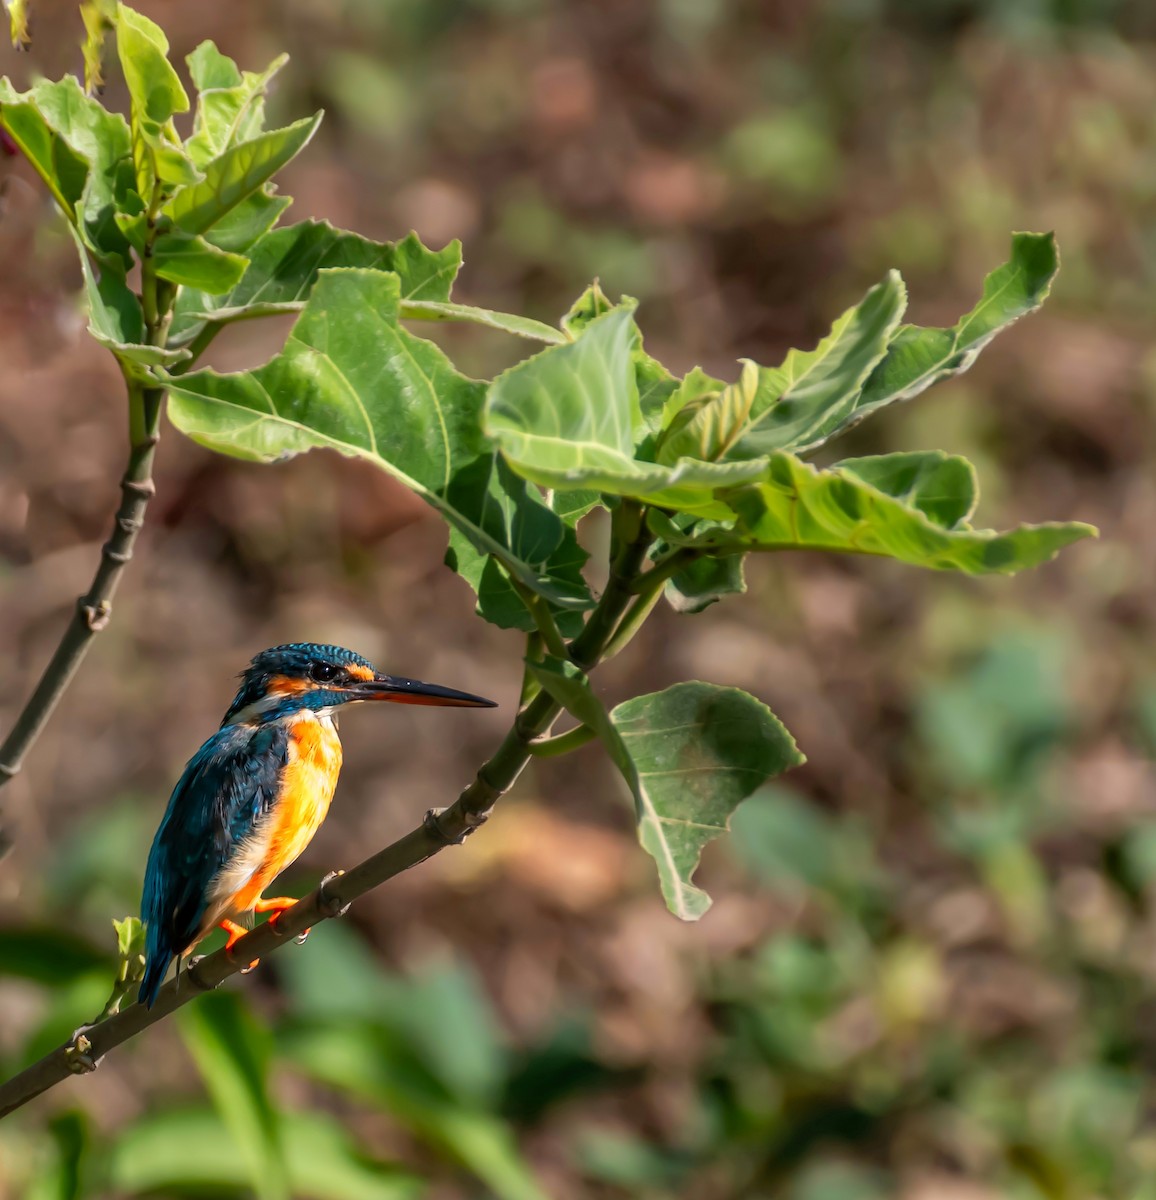 Common Kingfisher - Sachin Kumar Bhagat